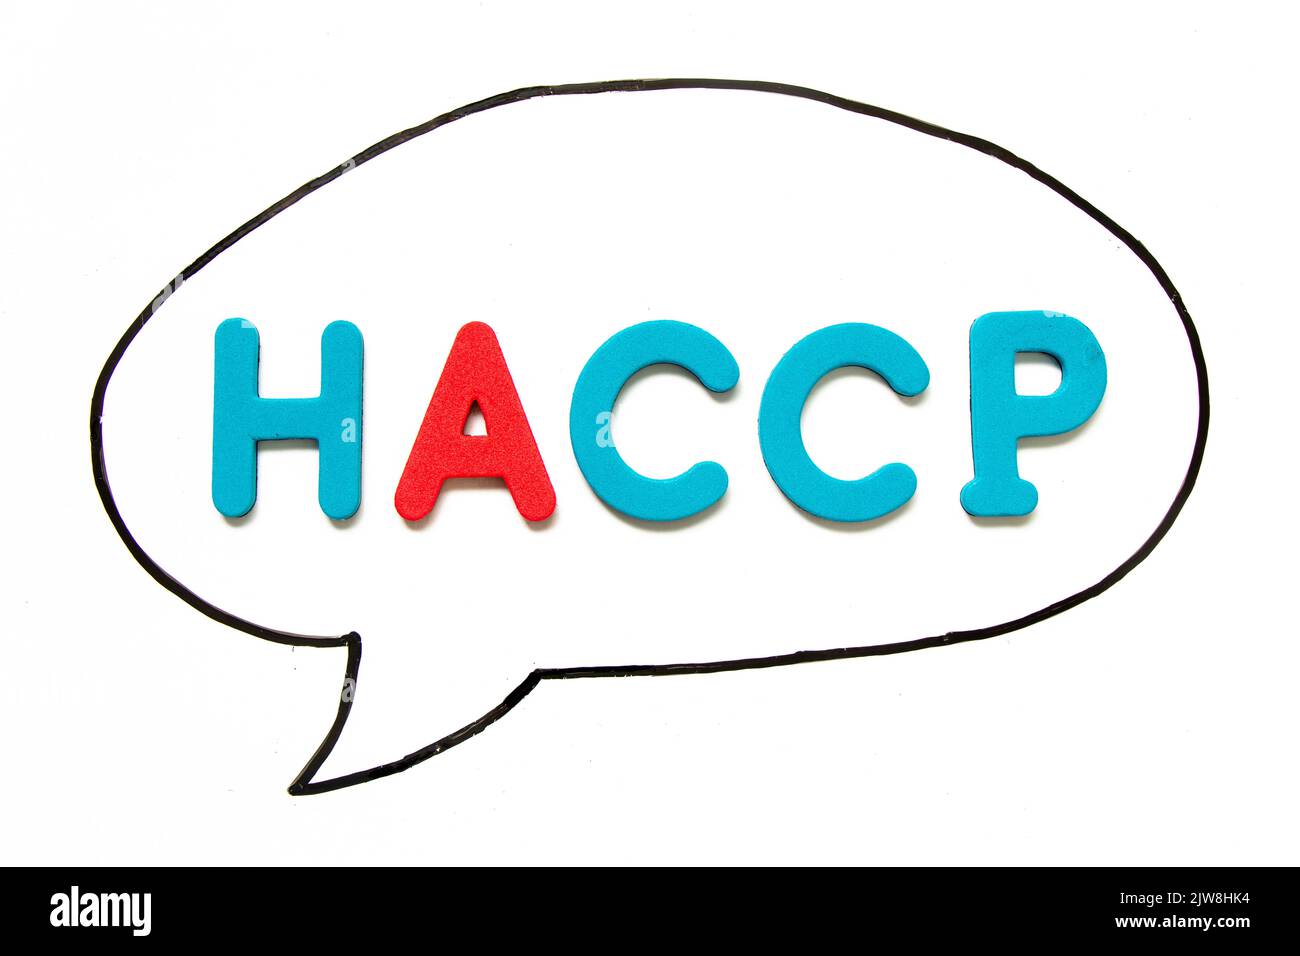 Buchstabenbuchstabe mit dem Wort HACCP (Hazard Analysis Critical Control Points) in schwarzer Linienhandzeichnung als Blasenrede auf Whiteboard-Hintergrund Stockfoto